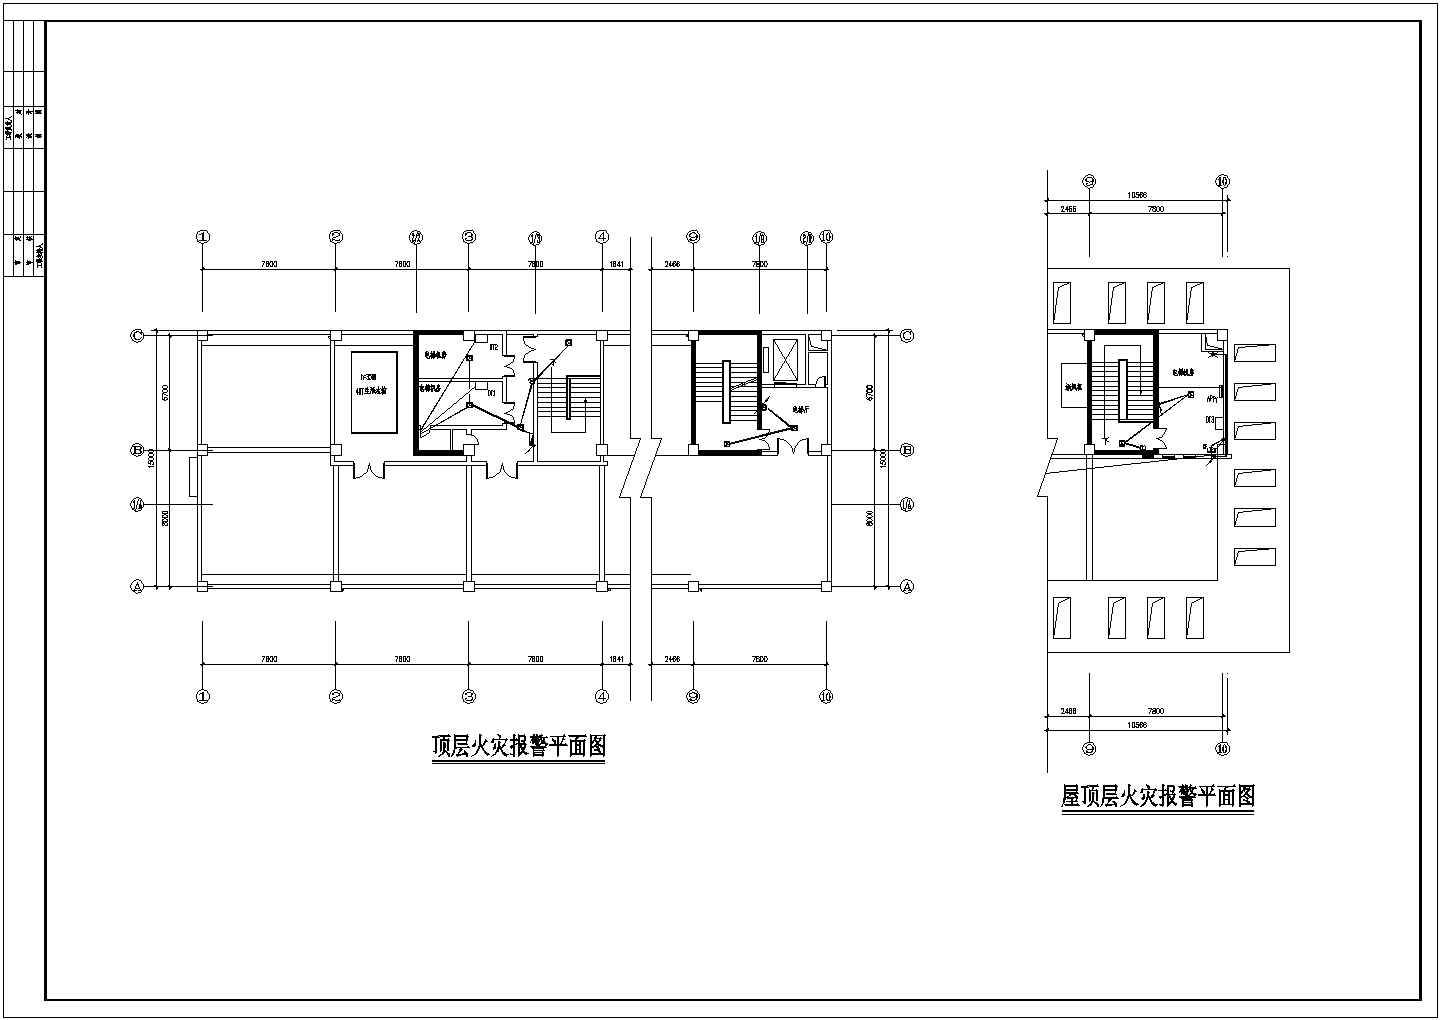 全套医院综合楼建筑电气工程设计图纸-35